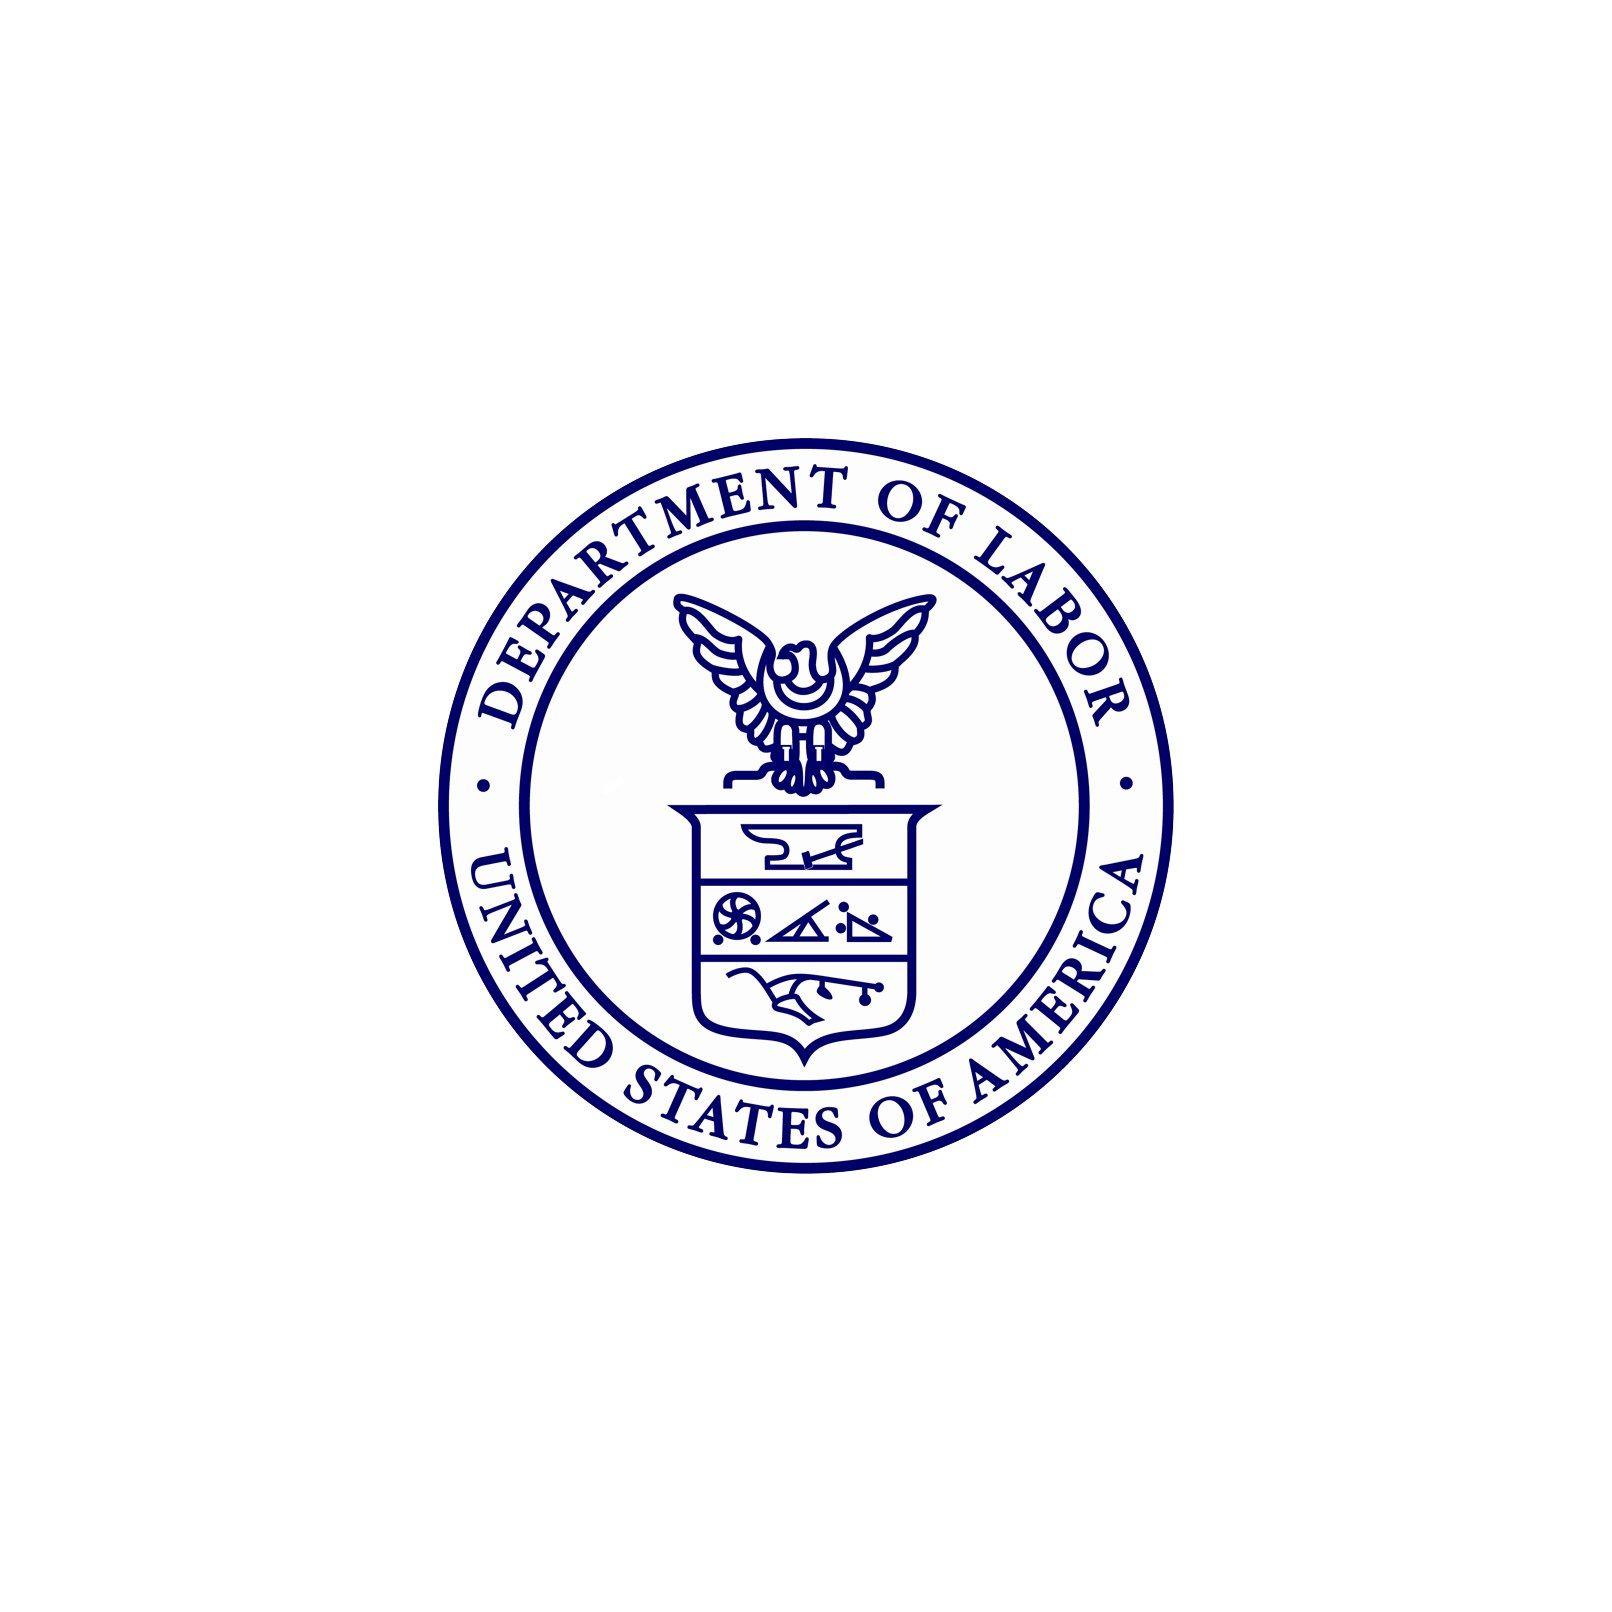 DOL Logo - Department of Labor Logo - Verité